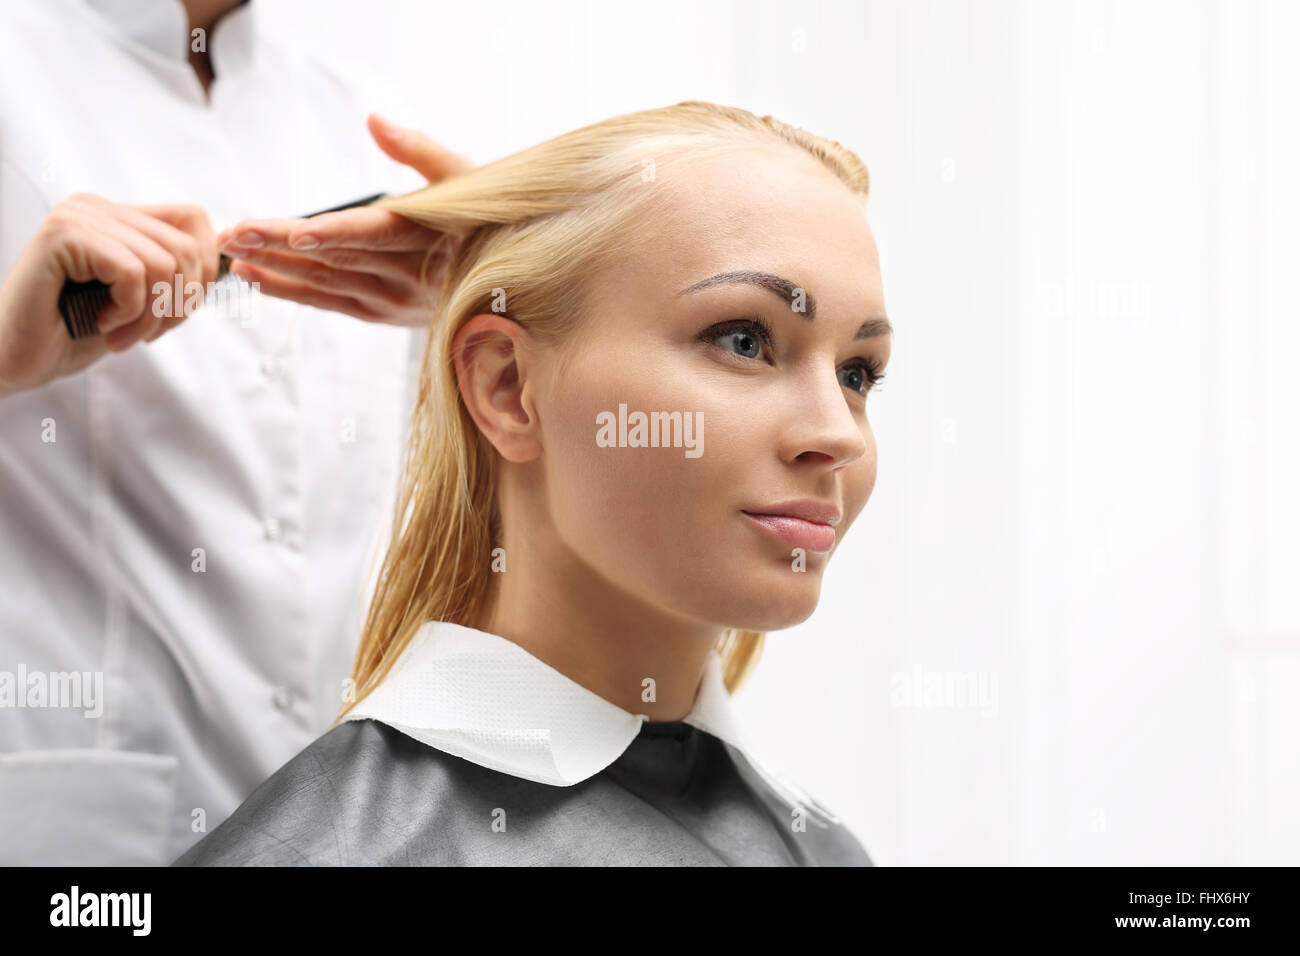 Di media lunghezza capelli, la donna presso il parrucchiere. La pettinatura dei capelli. La donna in sedia barbiere styling durante la chirurgia Foto Stock